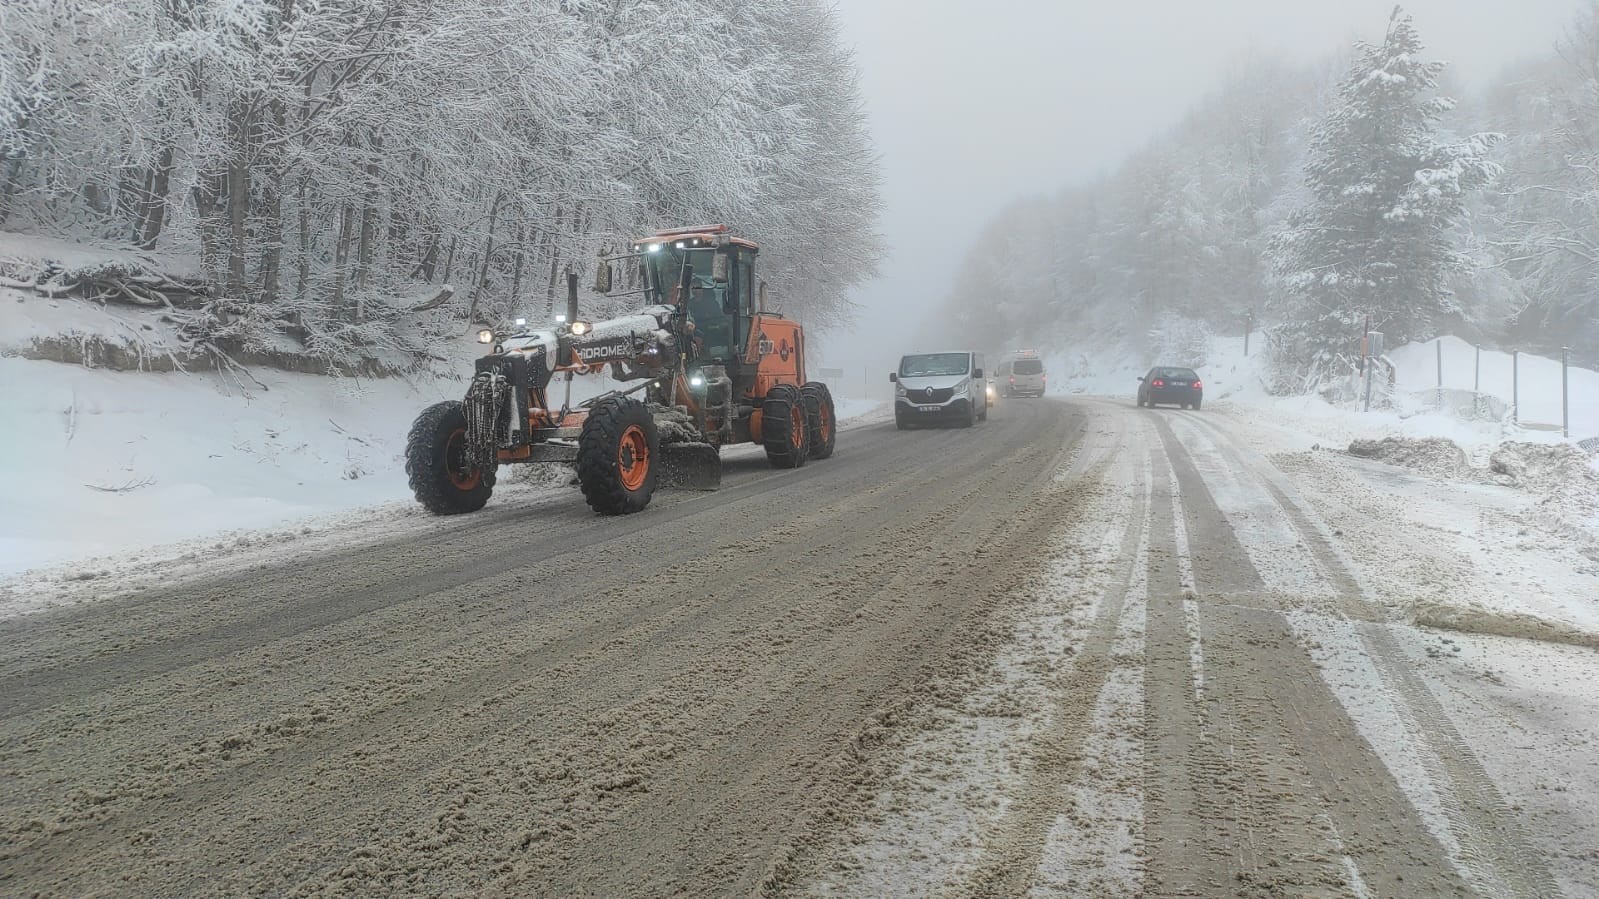 Kütahya Domaniç’te kar, sürücülere zor anlar yaşatıyor #kutahya